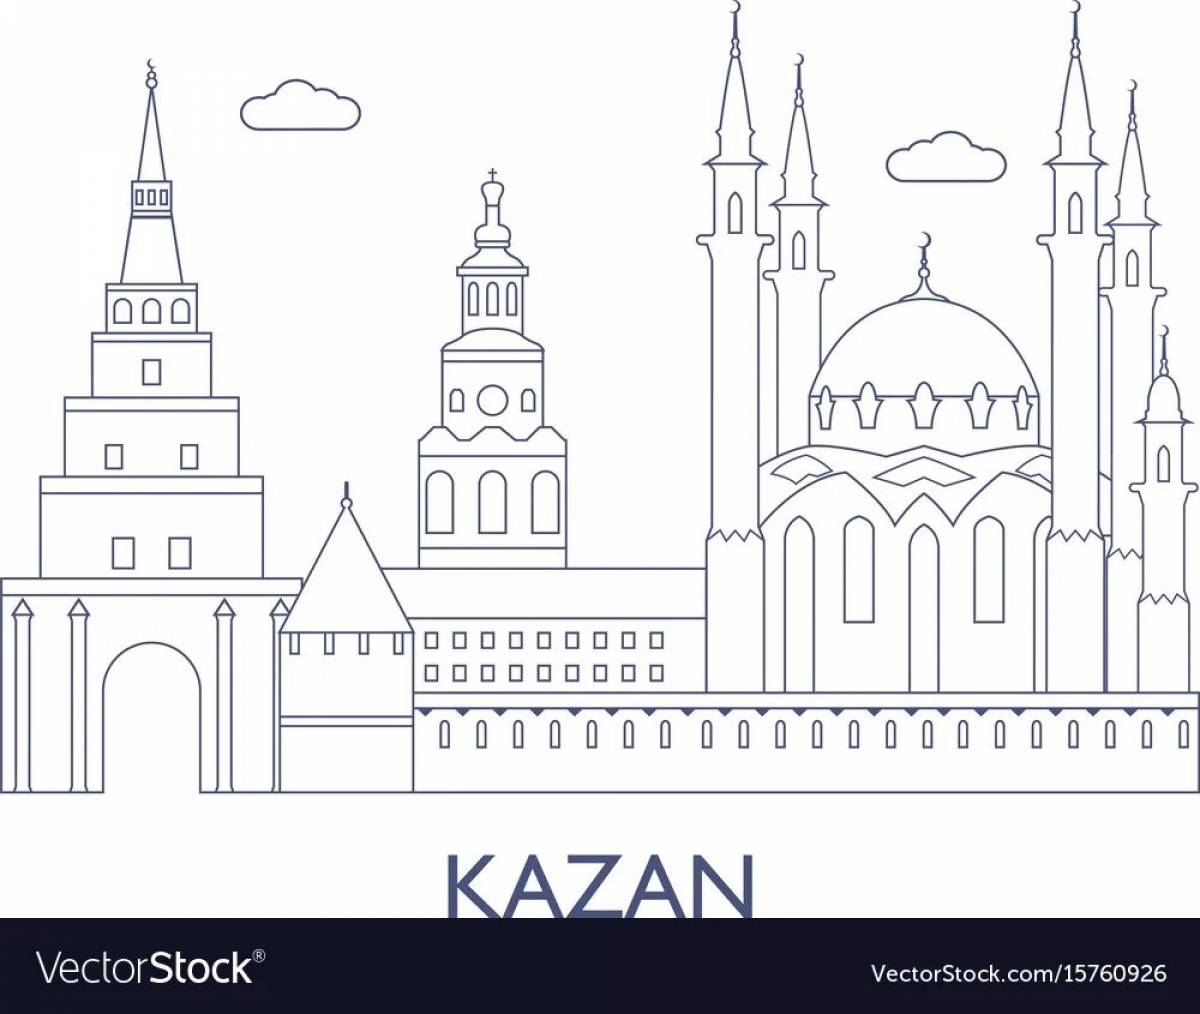 The incredible center of kazan